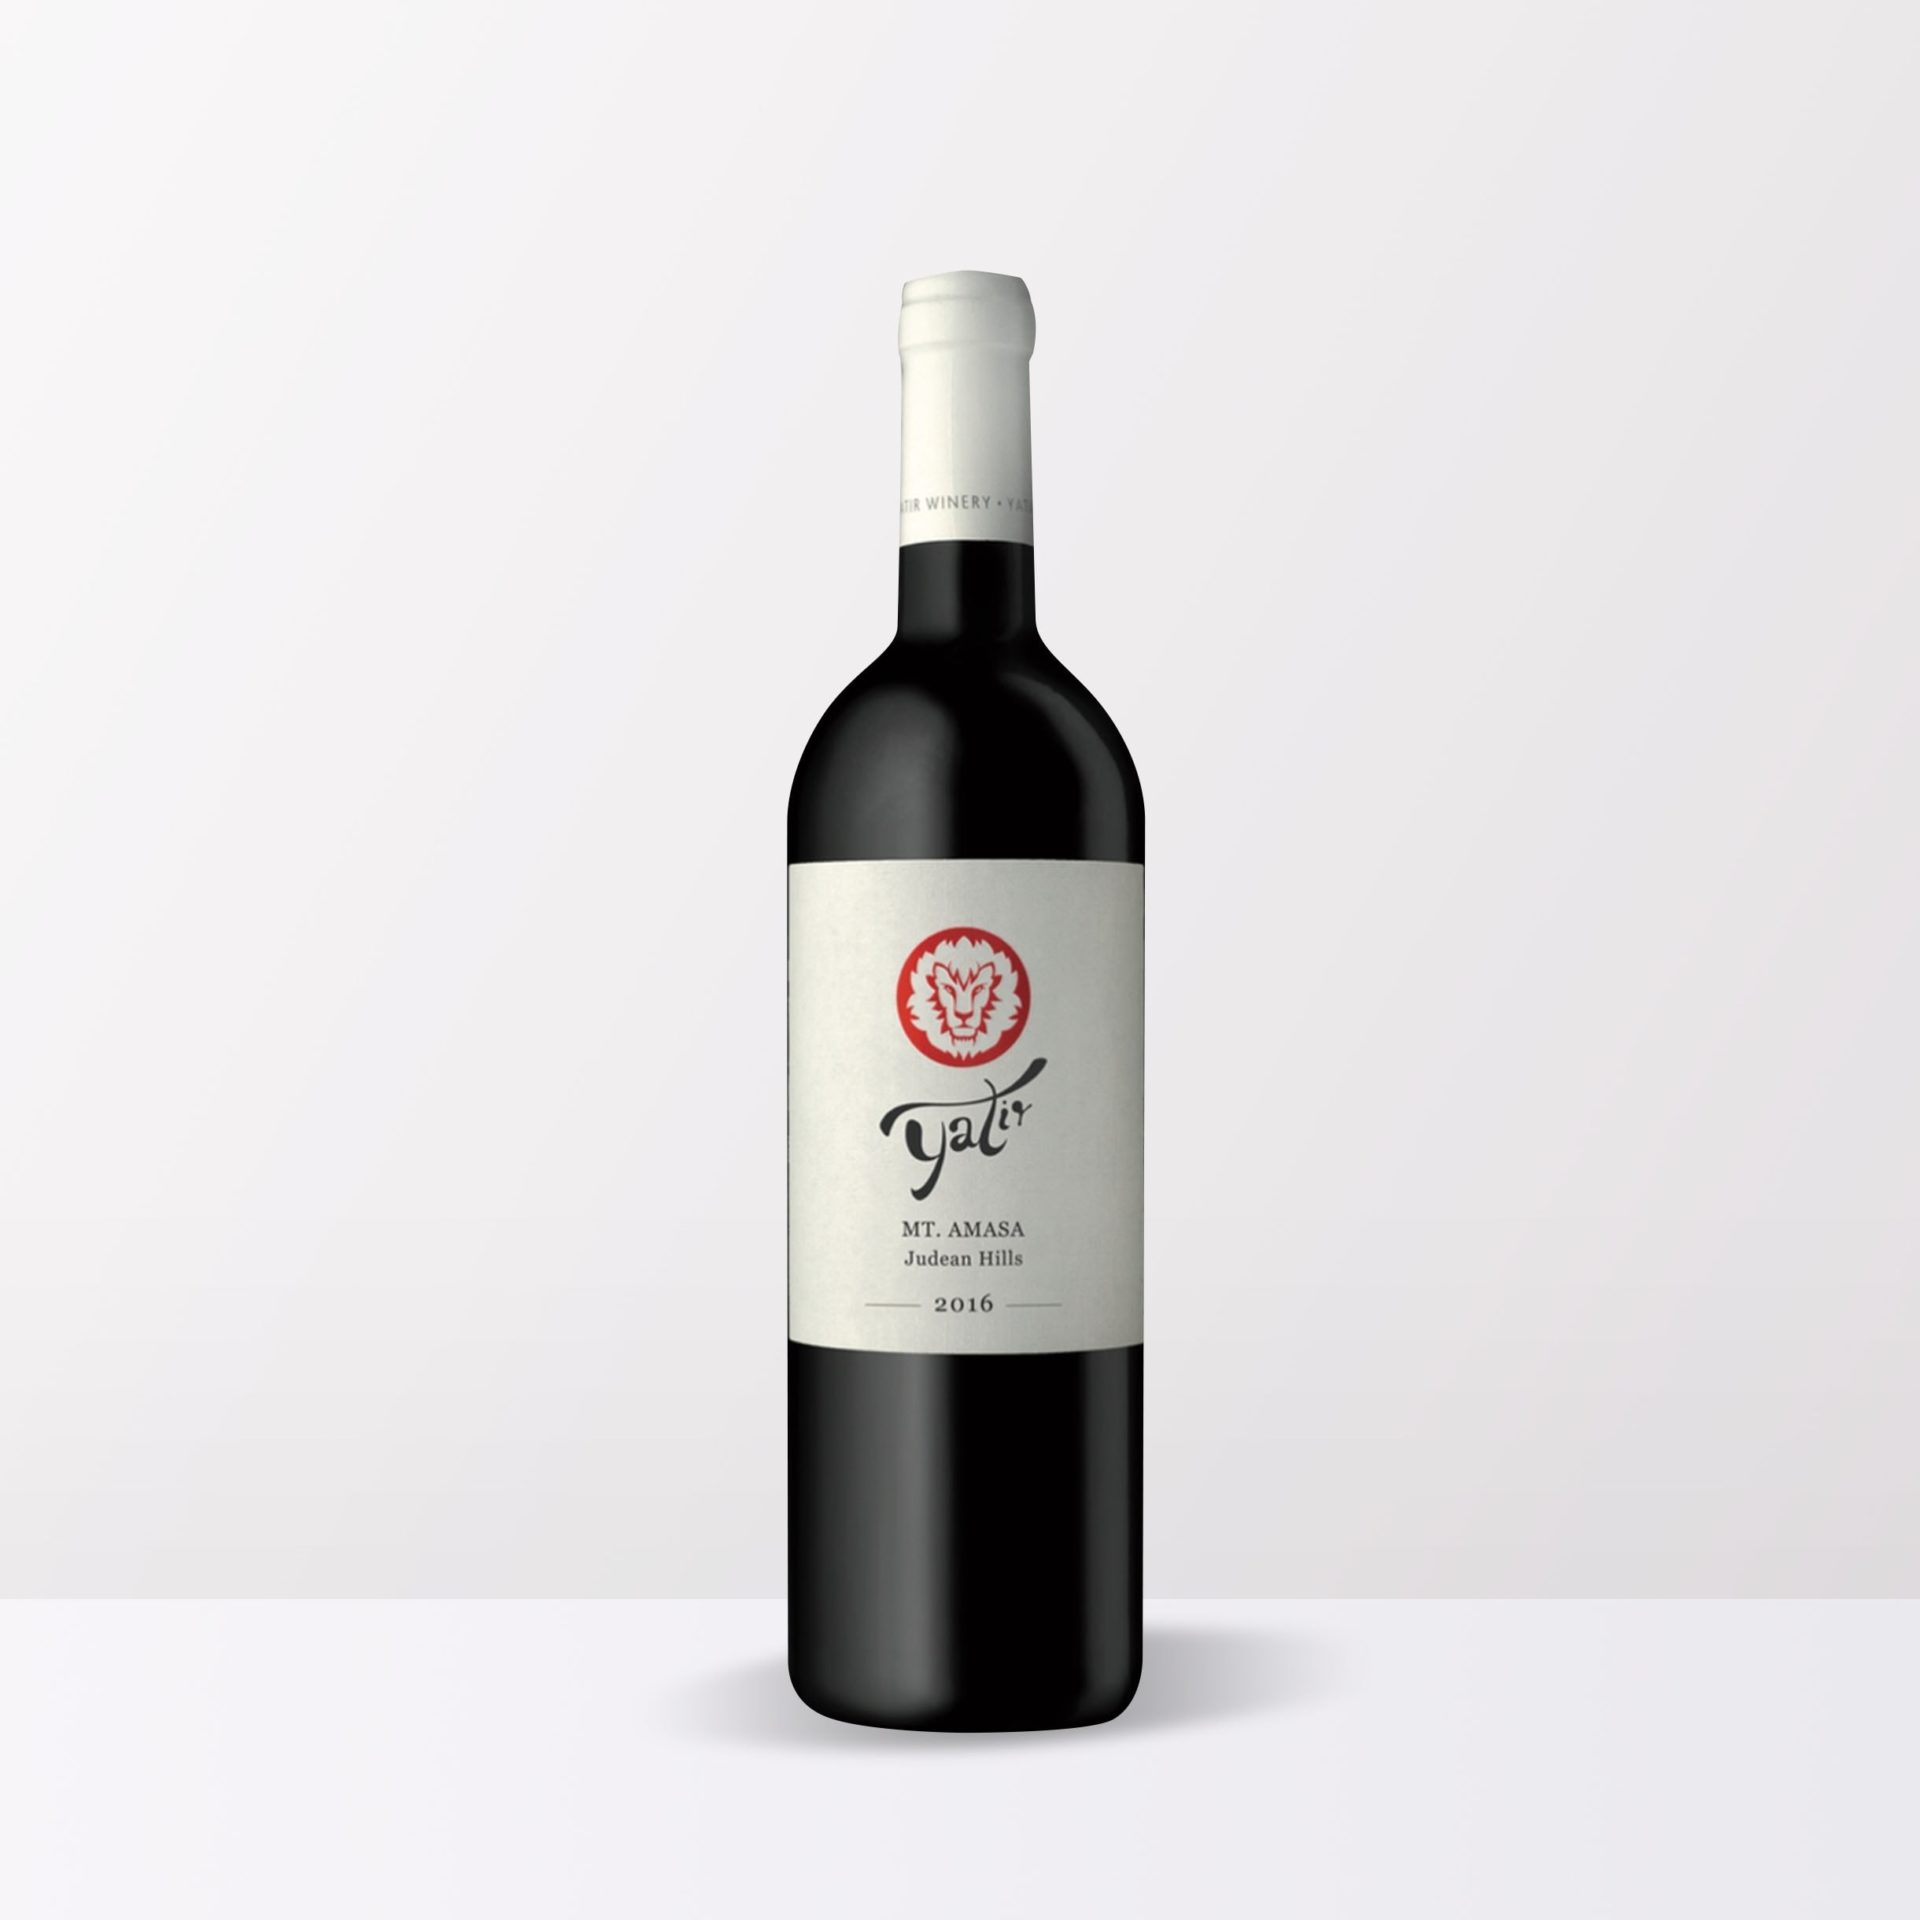 Yatir Mt Amassa vin casher rouge